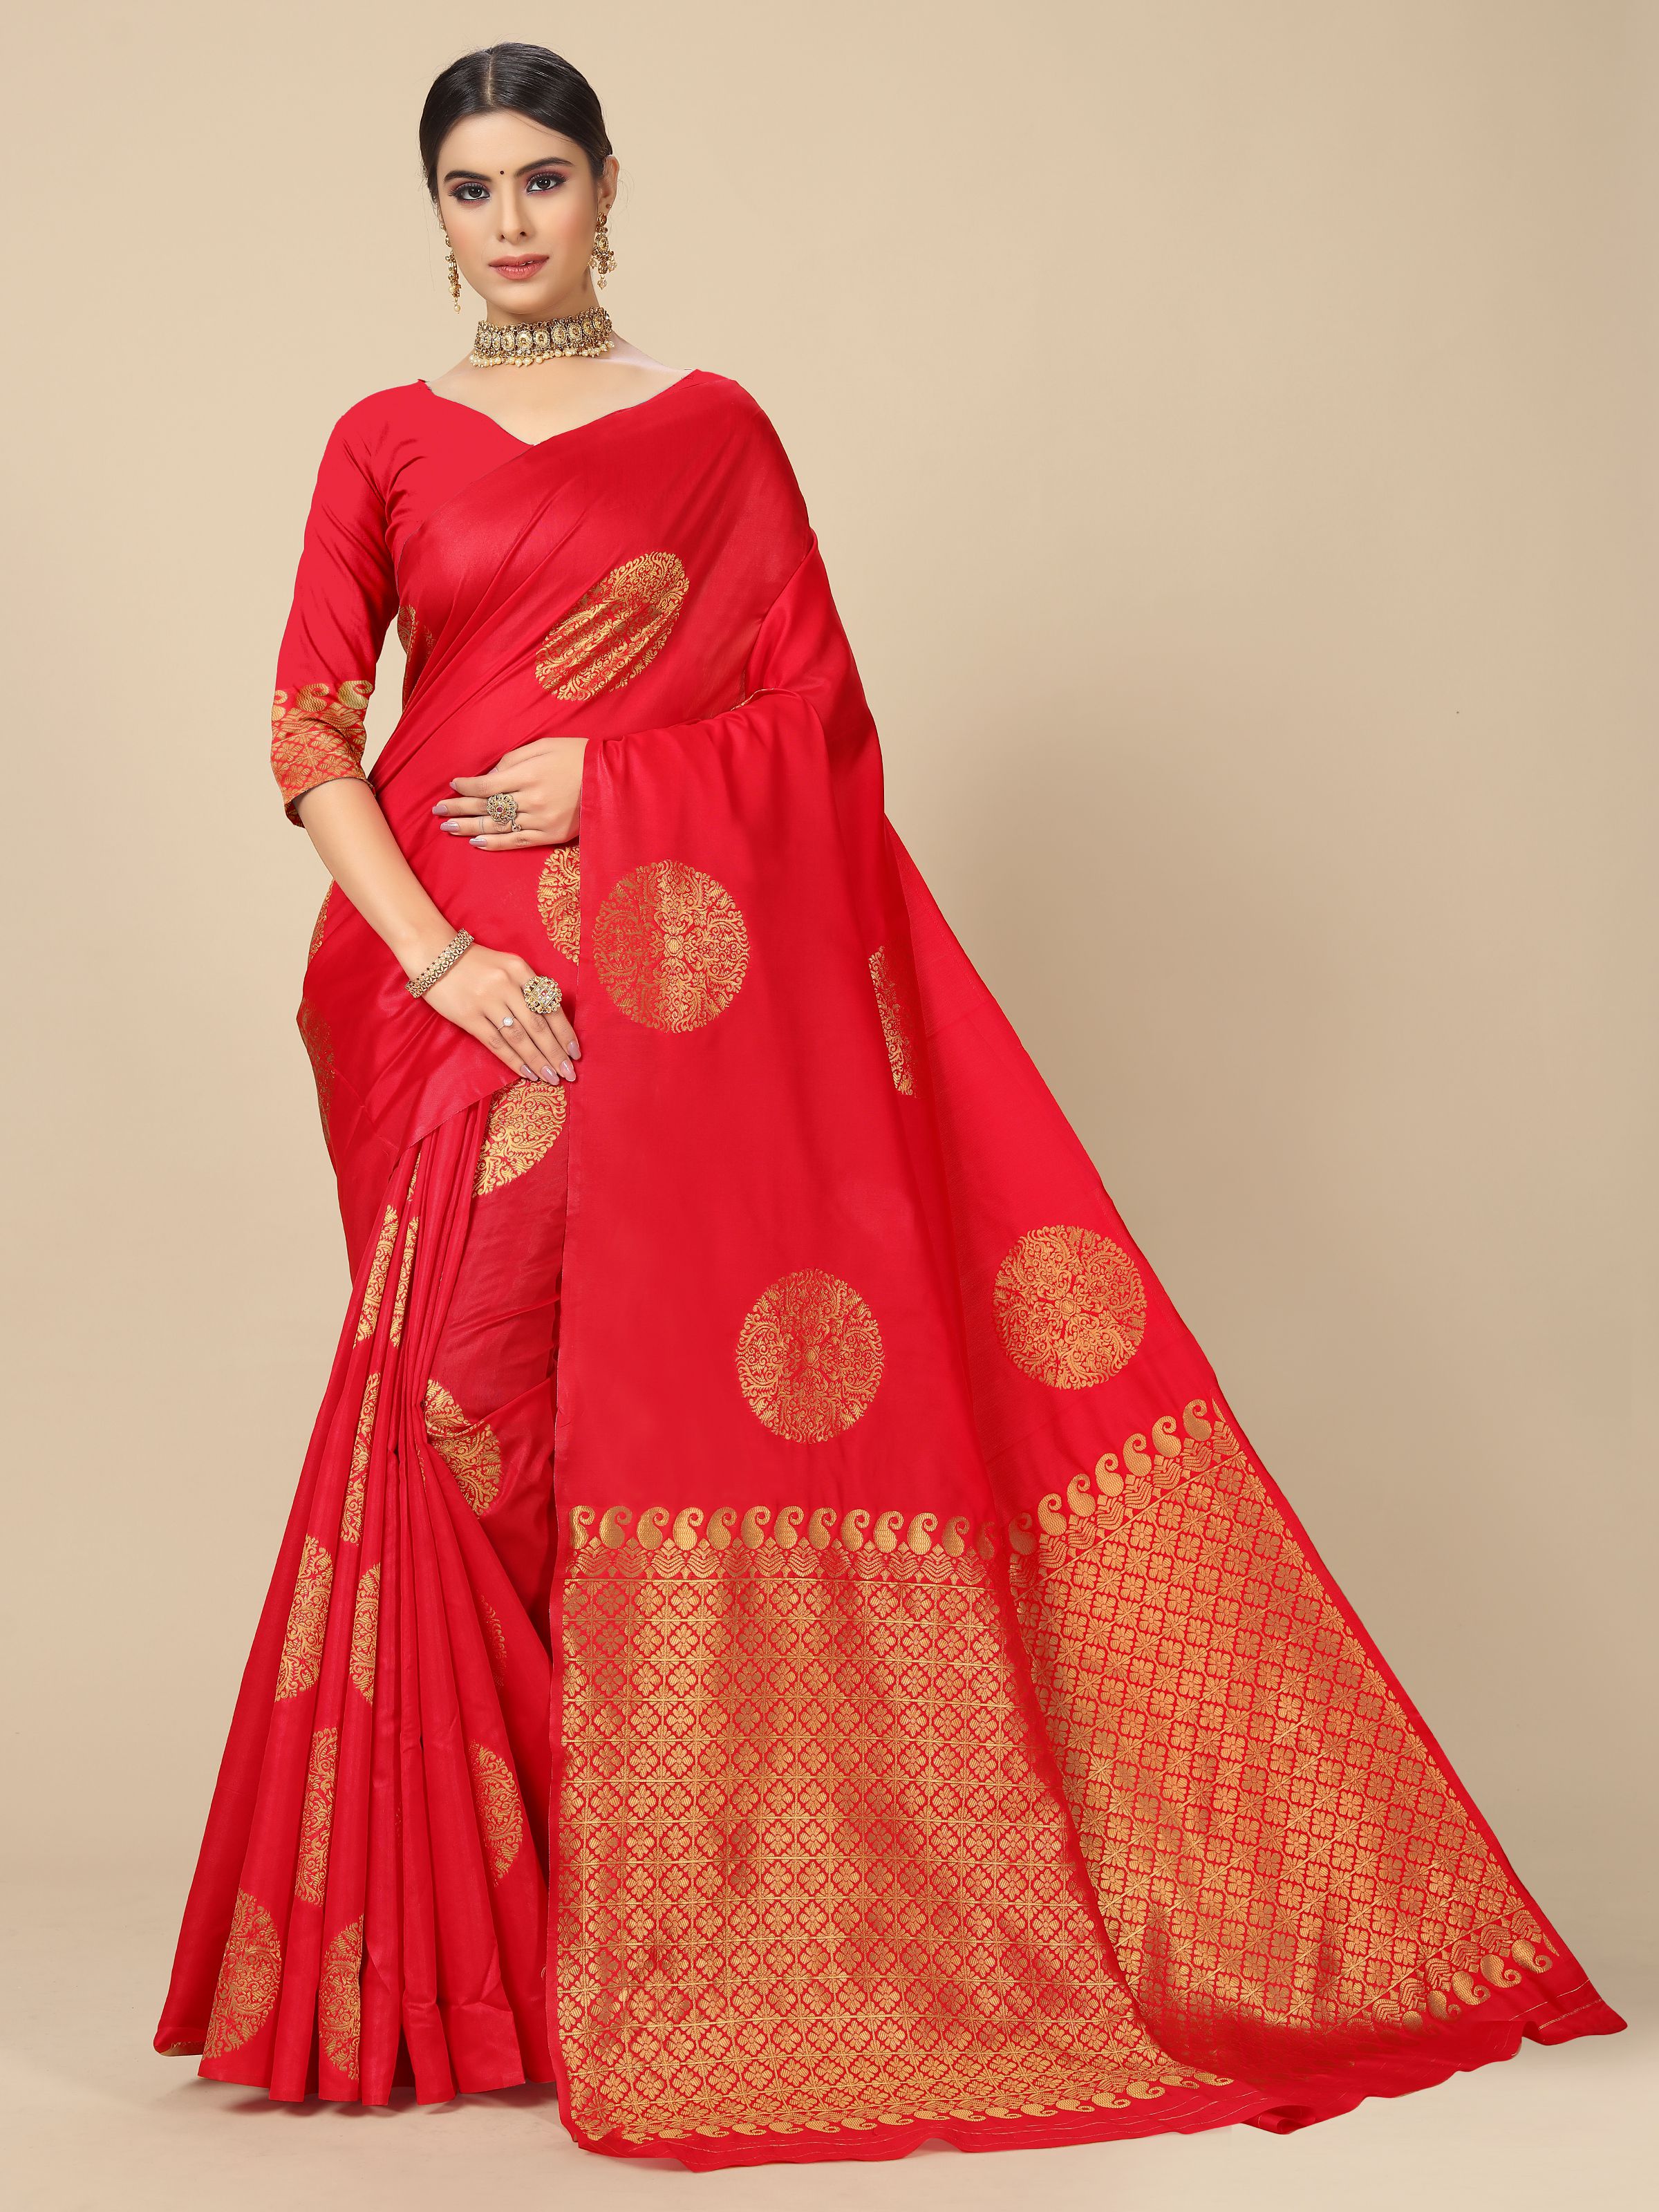 Rangita Women Banarasi Silk Jacquard Saree With Blouse Piece - Red